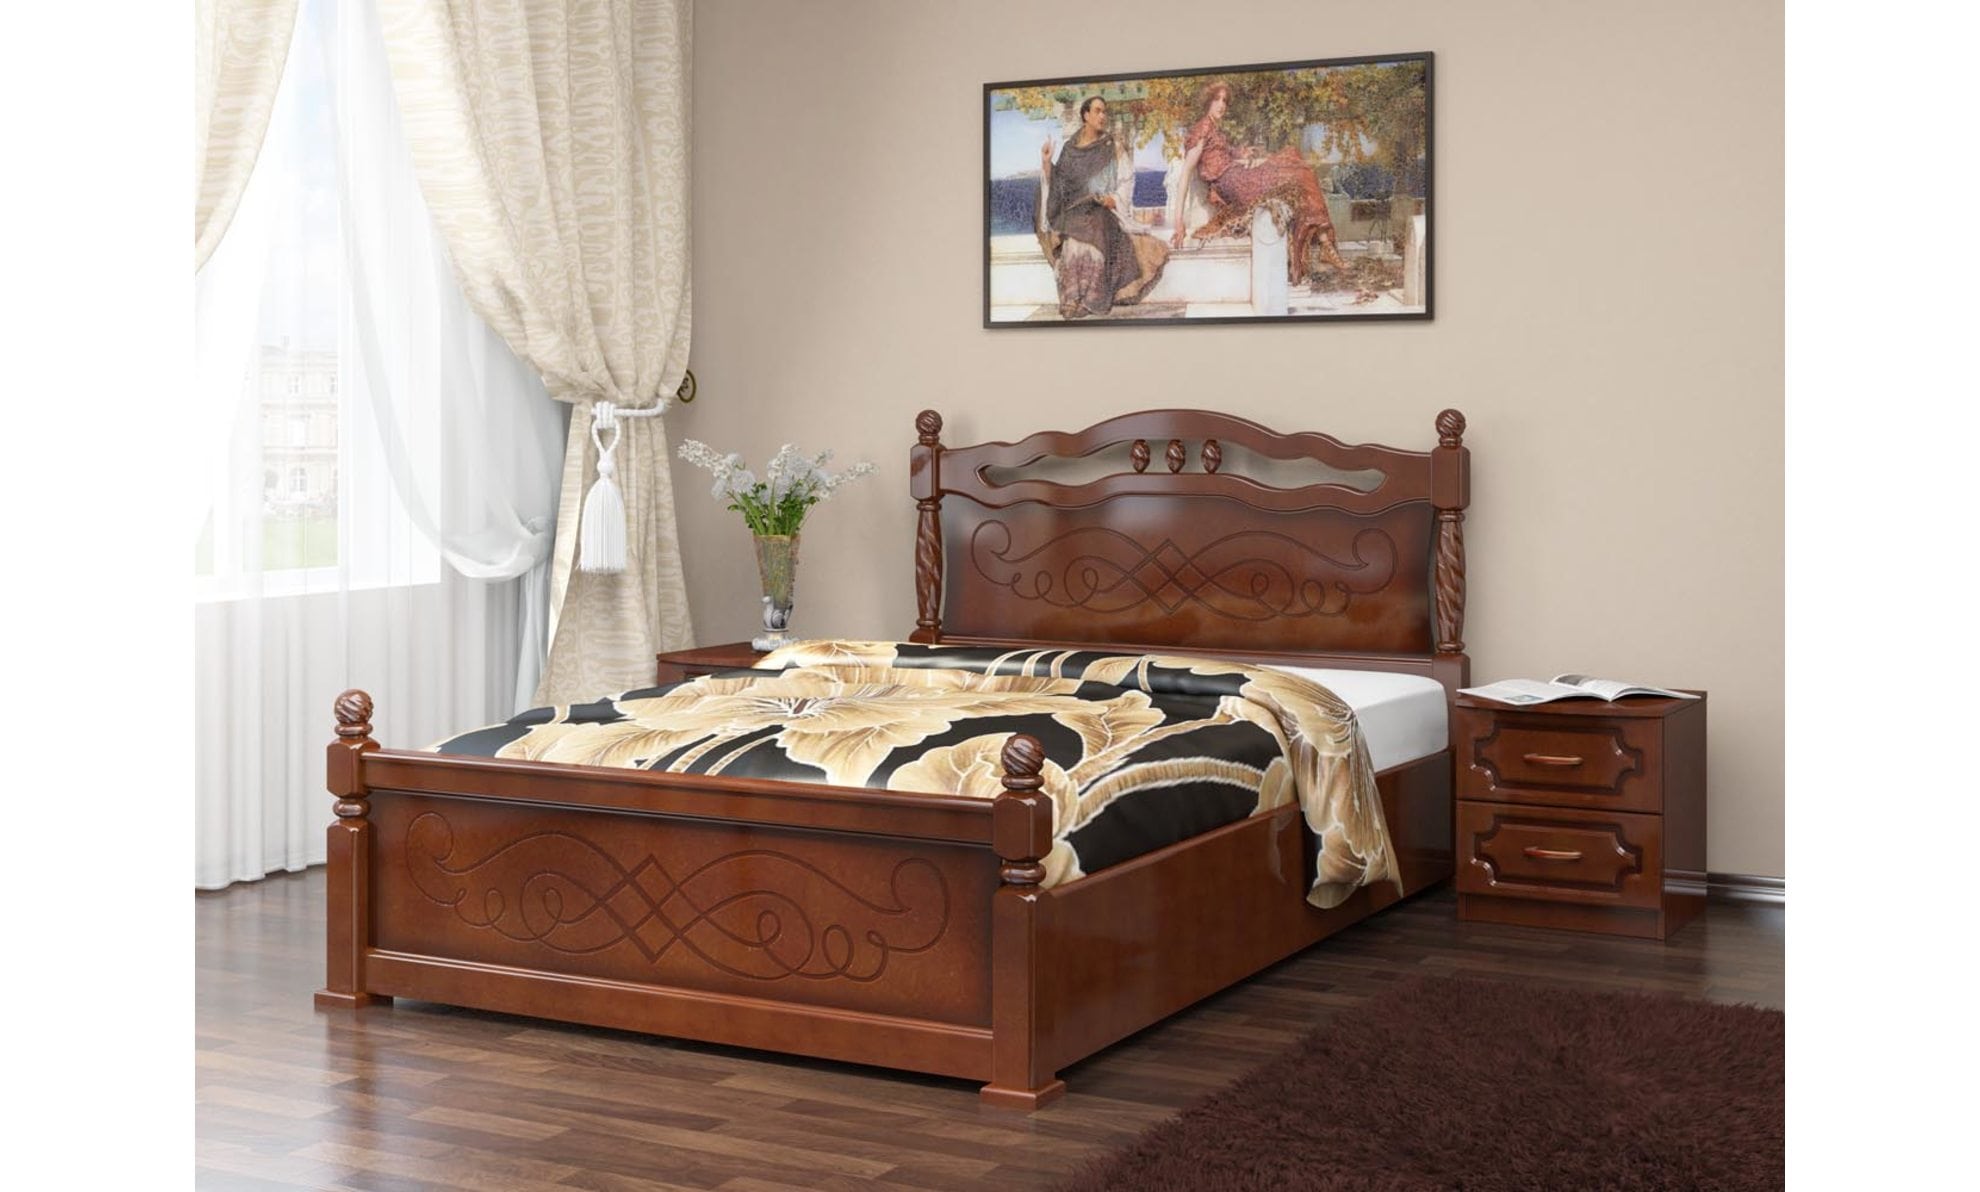 Кровать "Карина-14" Орех, с подъемным механизмом. Мебельный магазин Мебель Ленд. Санкт-Петербург